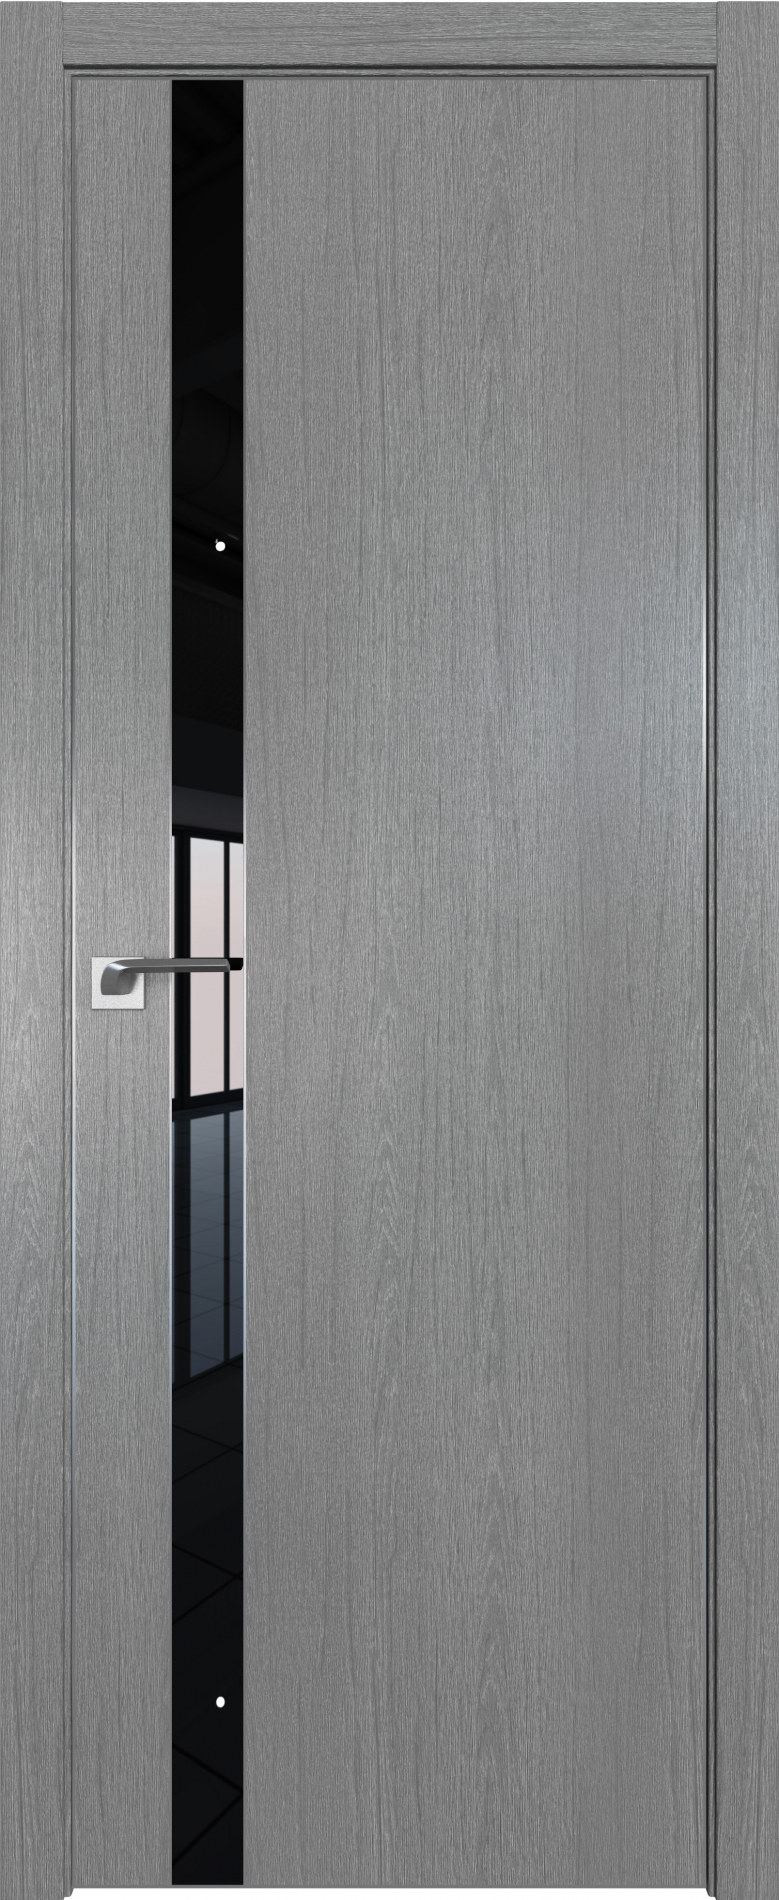 межкомнатные двери  Profil Doors 106ZN грувд серый